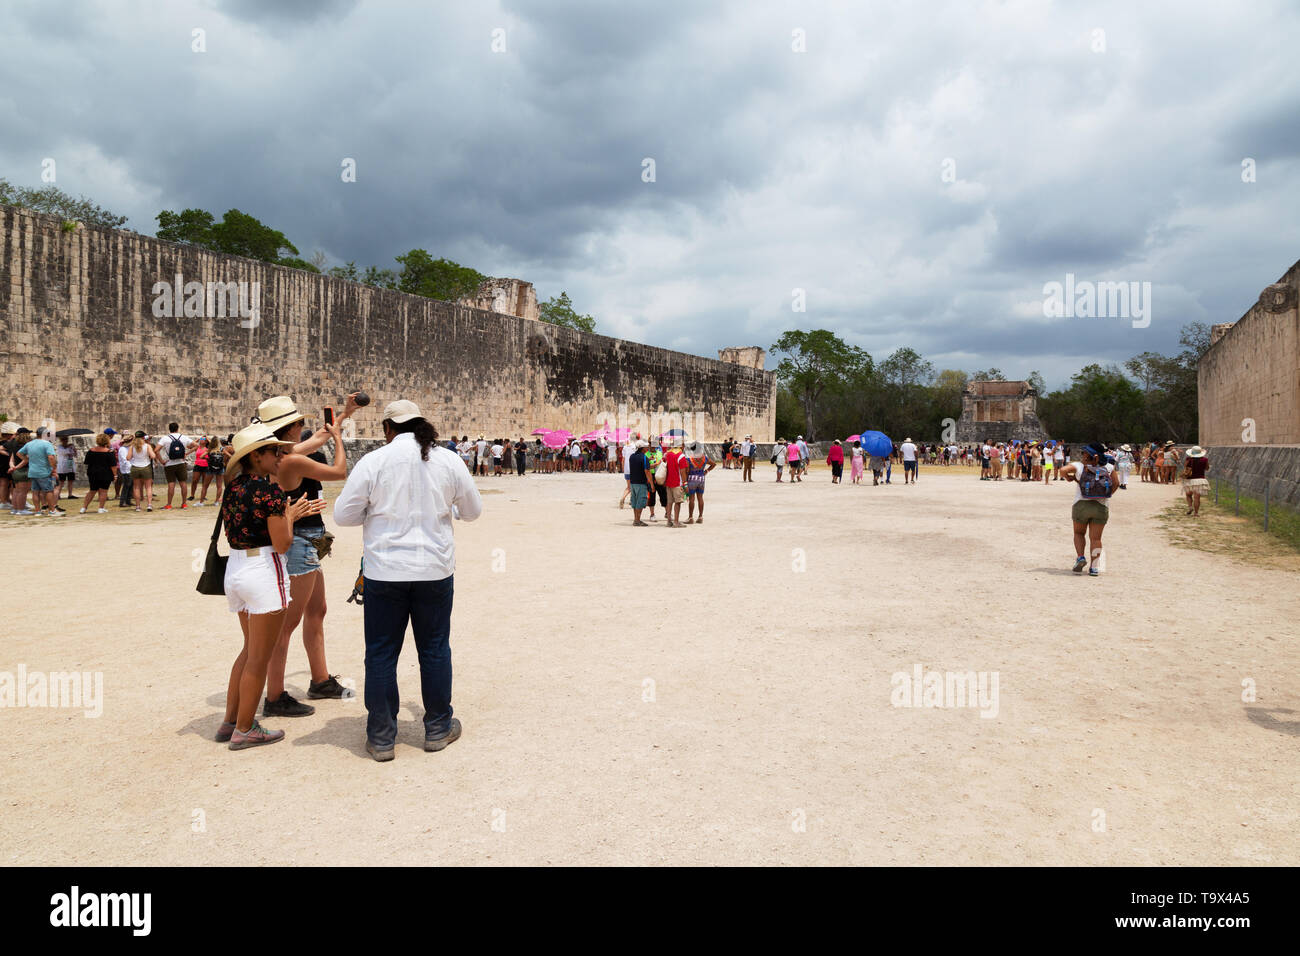 Les touristes à Chichen Itza, ou - le plus grand jeu de balle dans le monde Maya, Chichen Itza ruines mayas, Yucatan Mexique Amérique Latine Banque D'Images